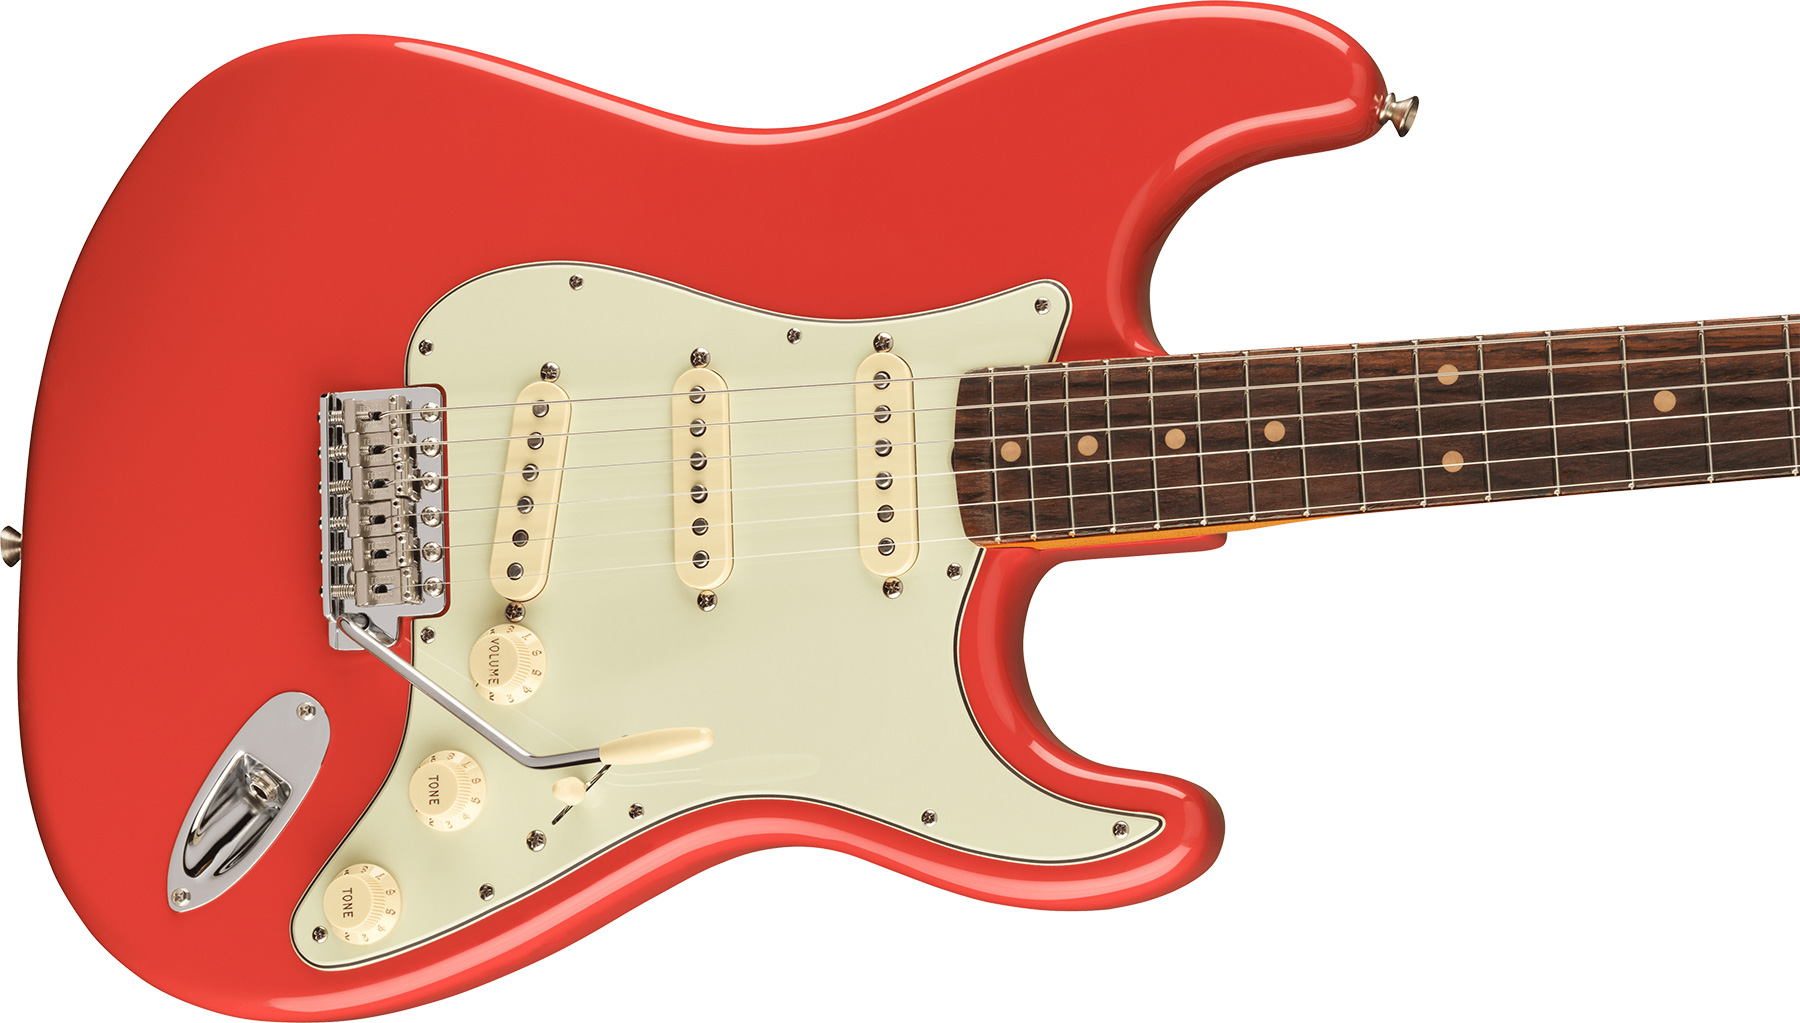 Fender Strat 1961 American Vintage Ii Usa 3s Trem Rw - Fiesta Red - Elektrische gitaar in Str-vorm - Variation 2